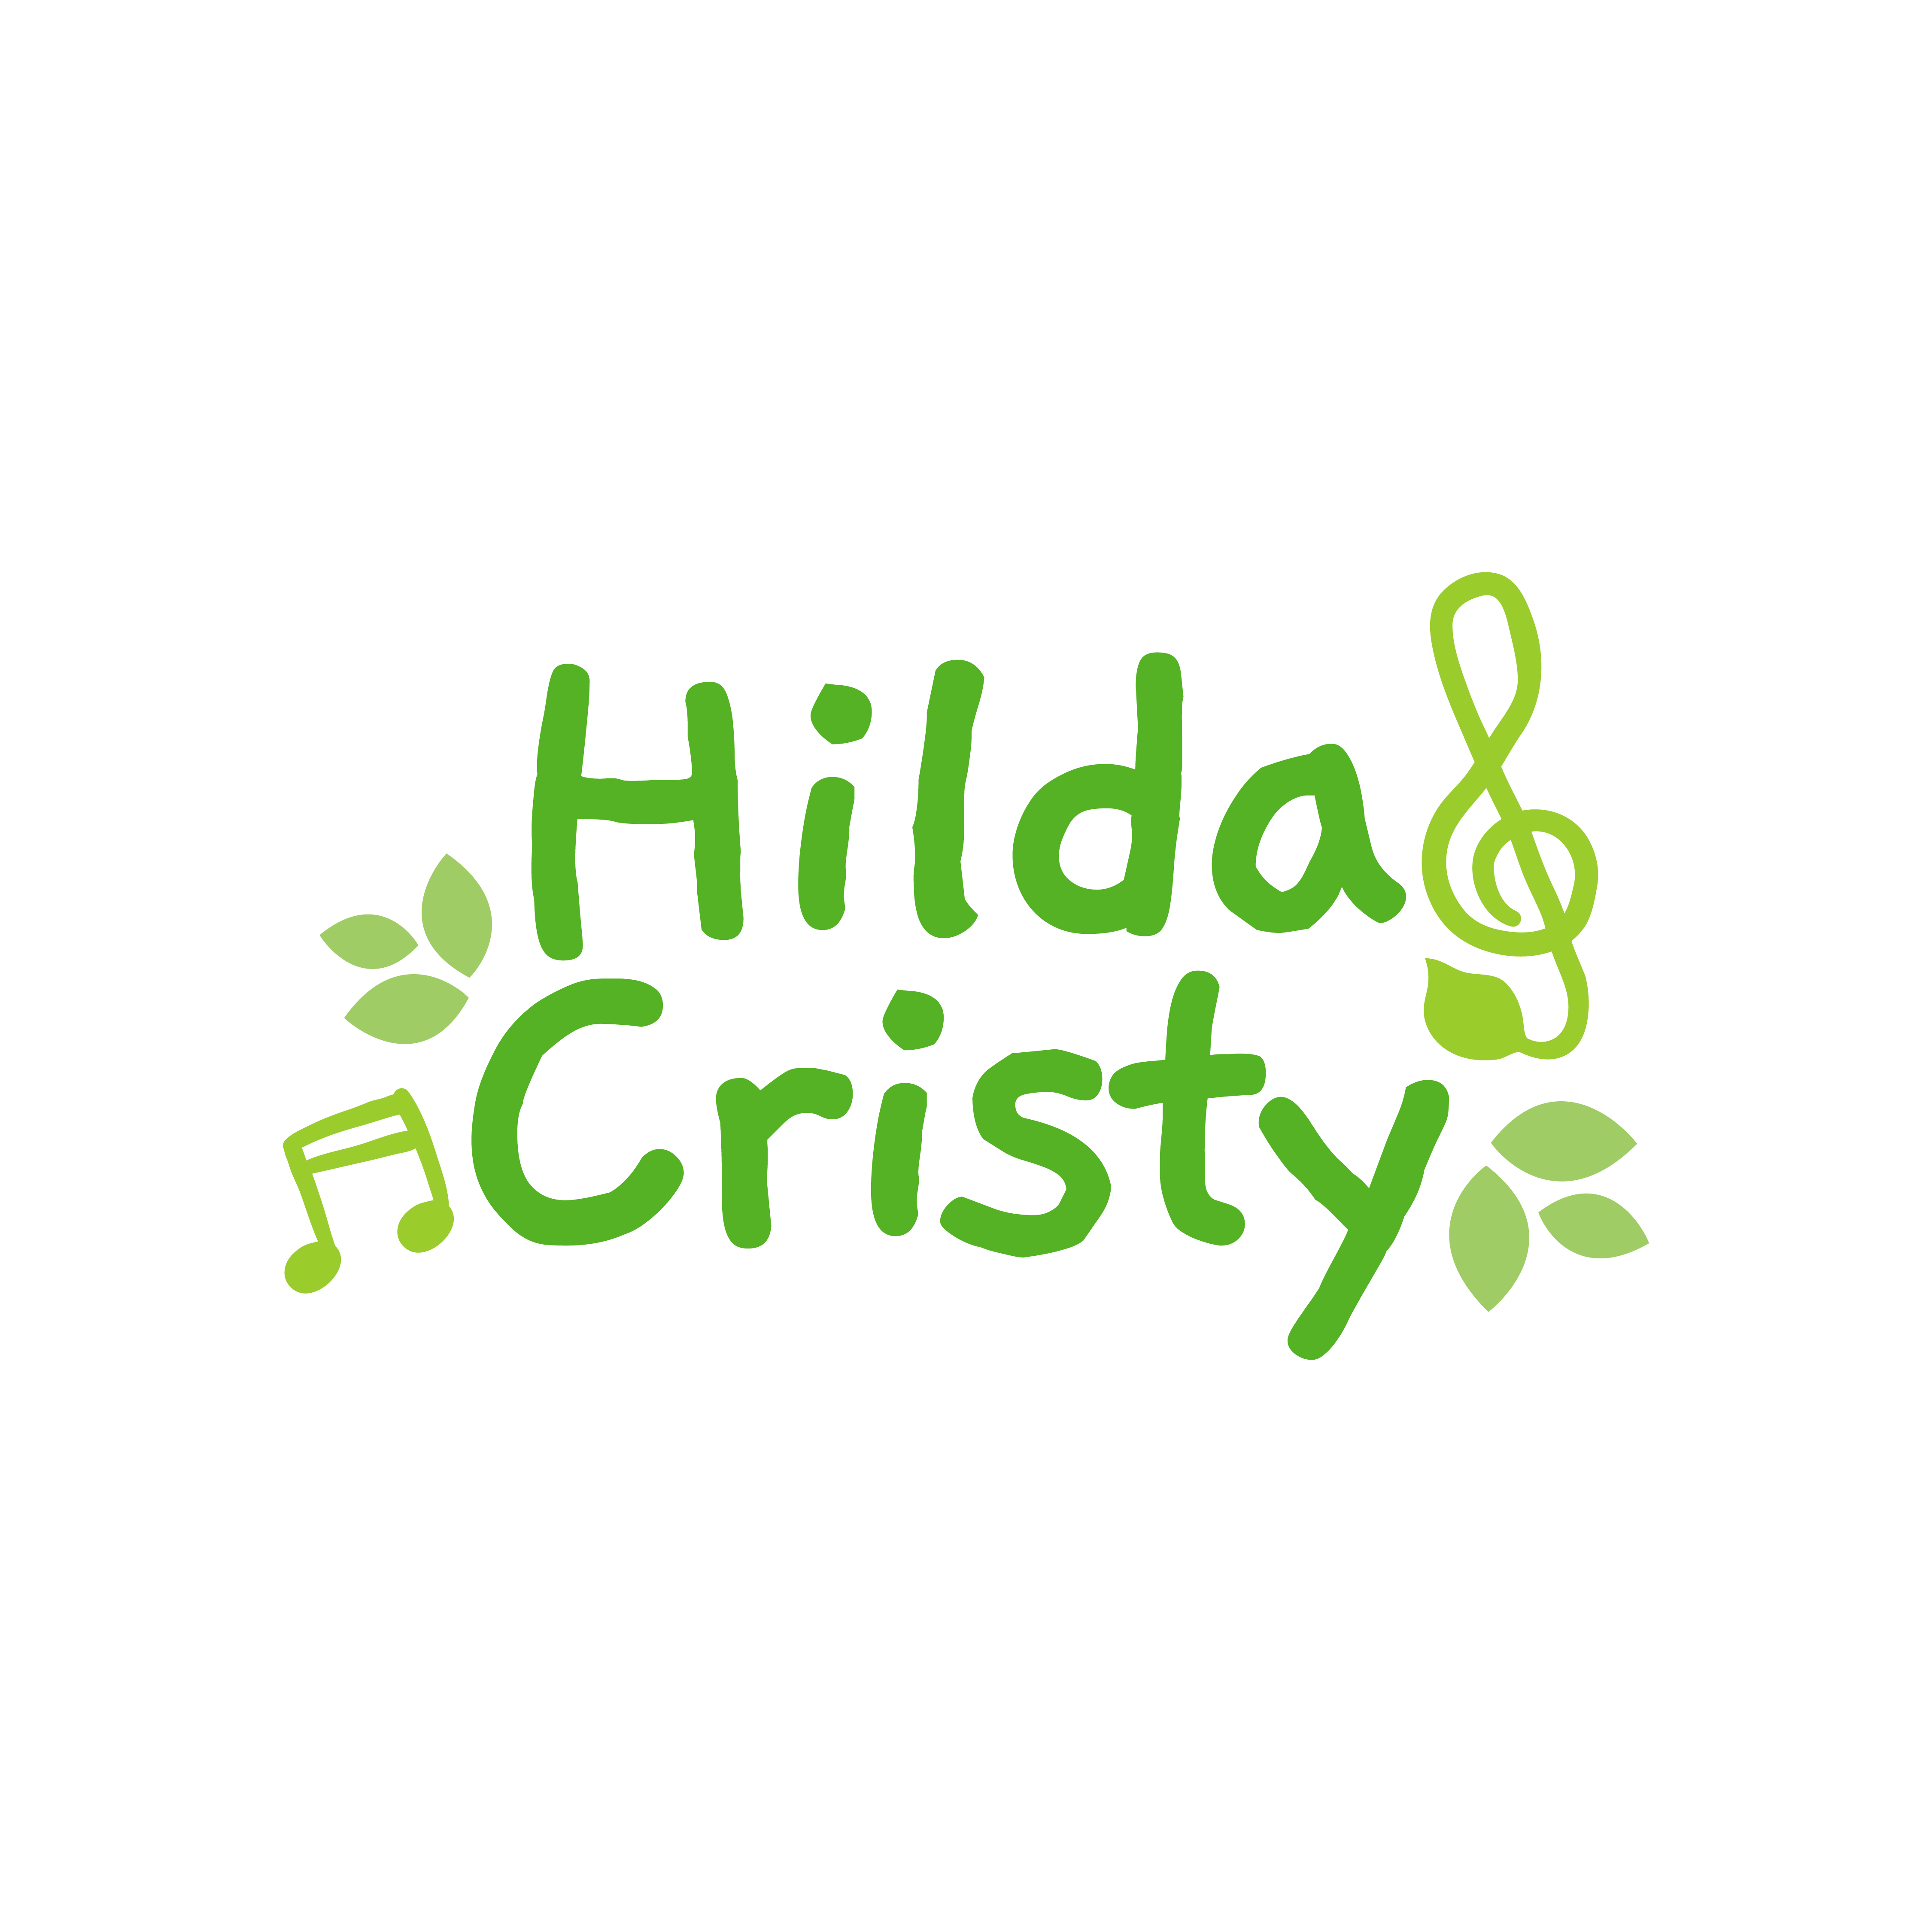 Hilda Cristy